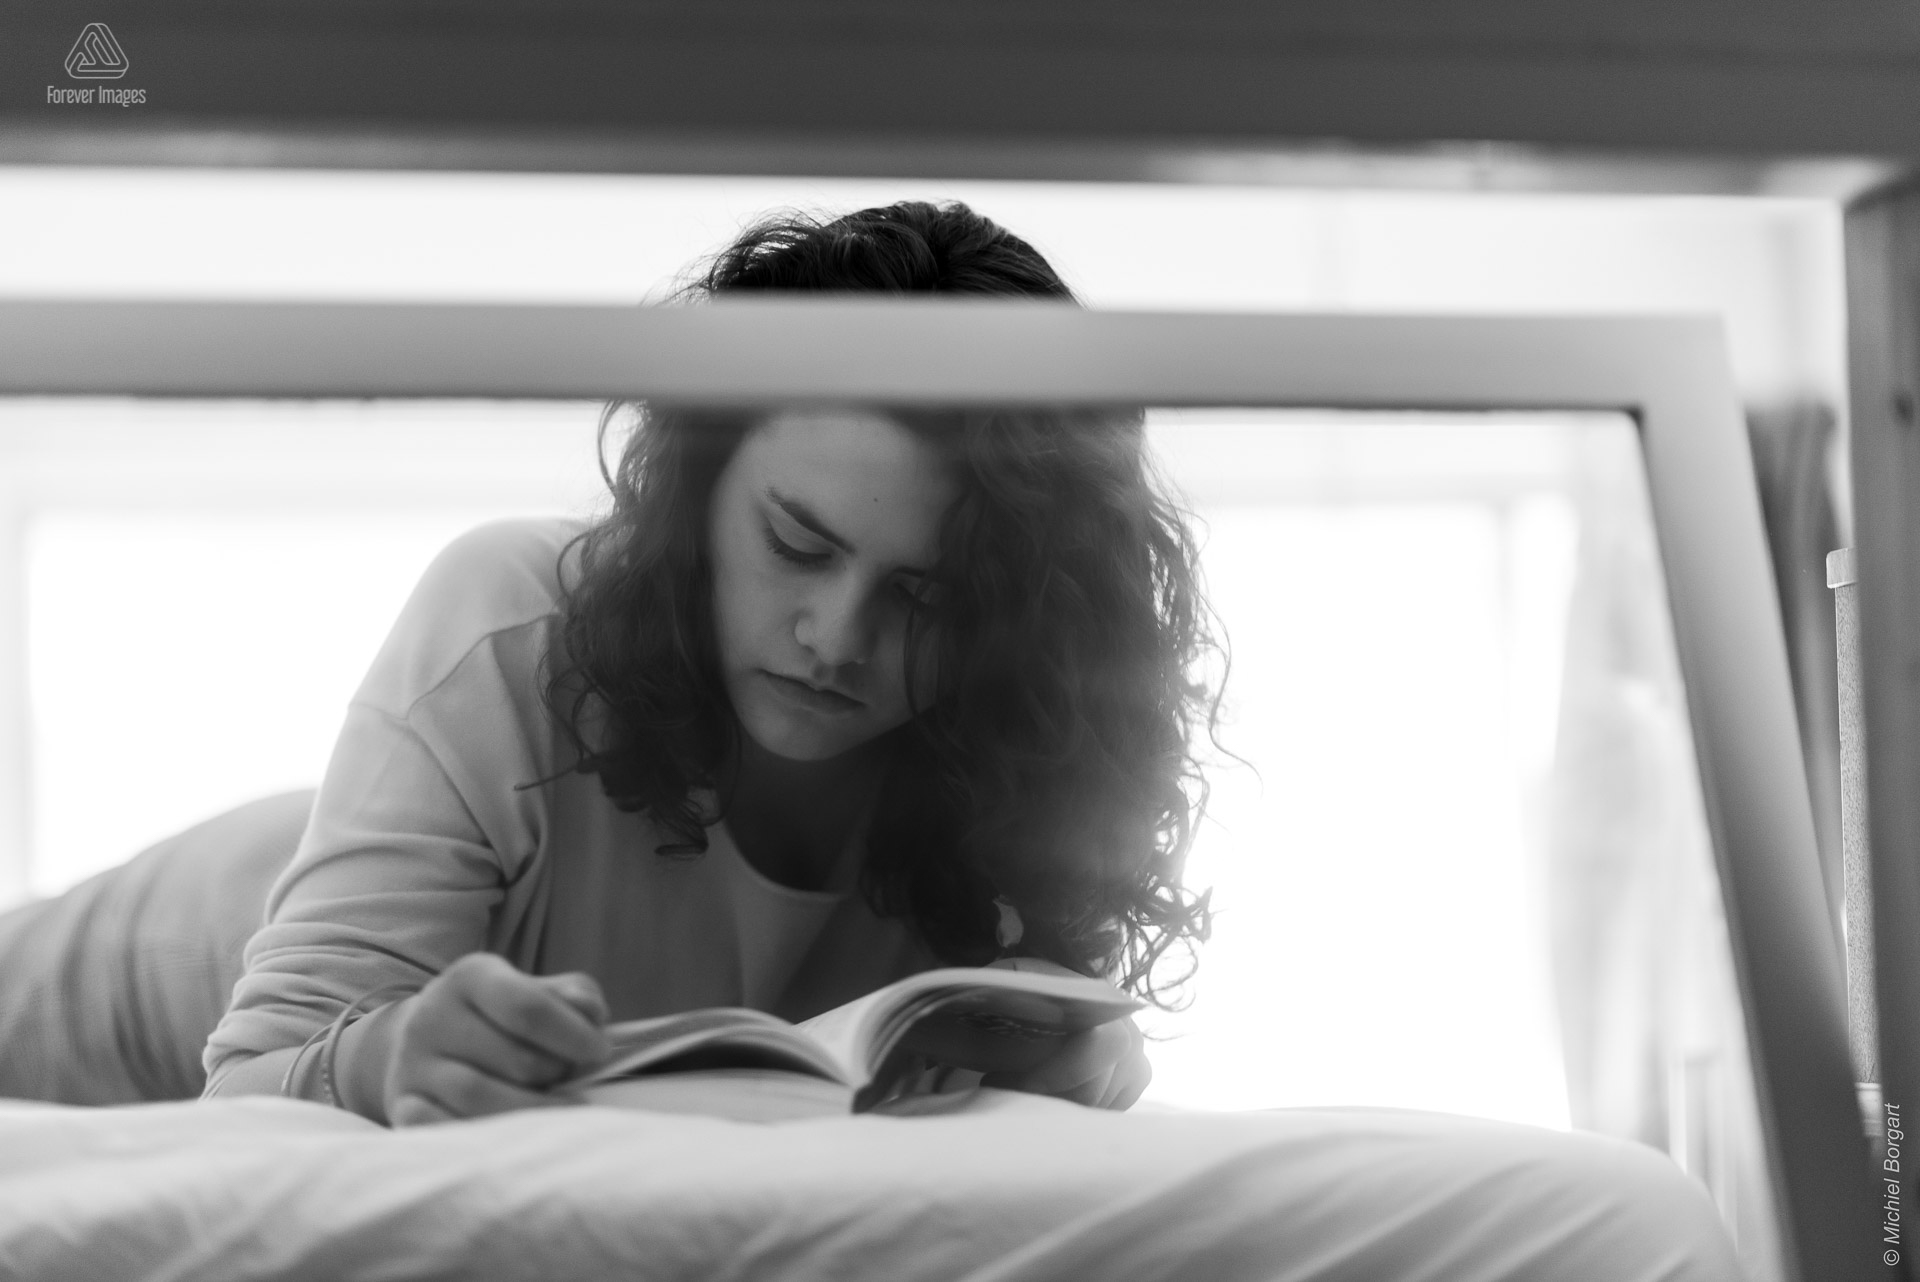 Portretfoto zwart-wit jonge dame leest boek op bed door raam | Tessa Holscher | Portretfotograaf Michiel Borgart - Forever Images.